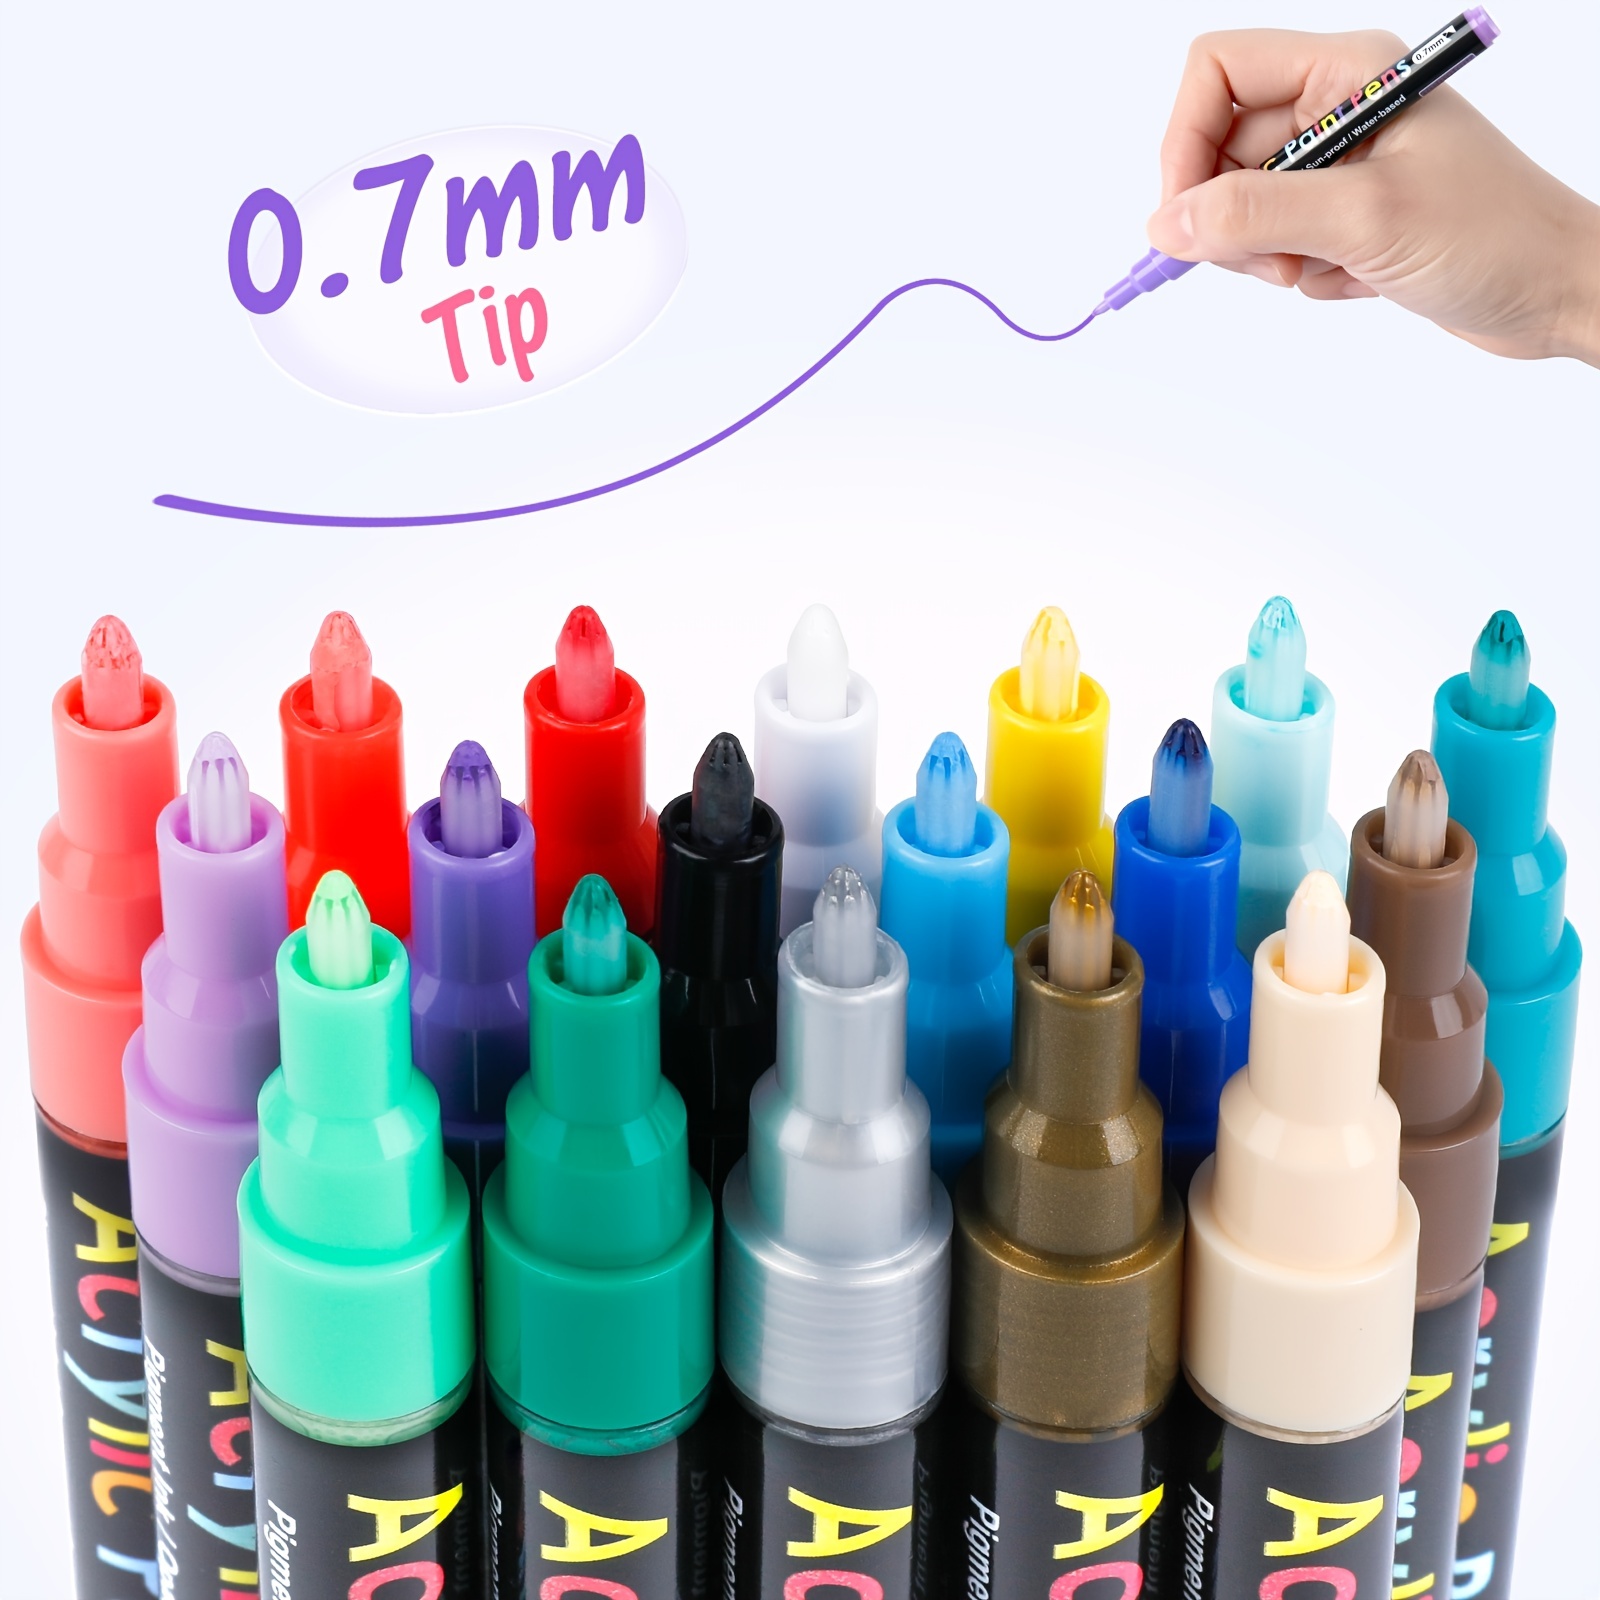  Rotuladores acrílicos de 60 colores, bolígrafos de